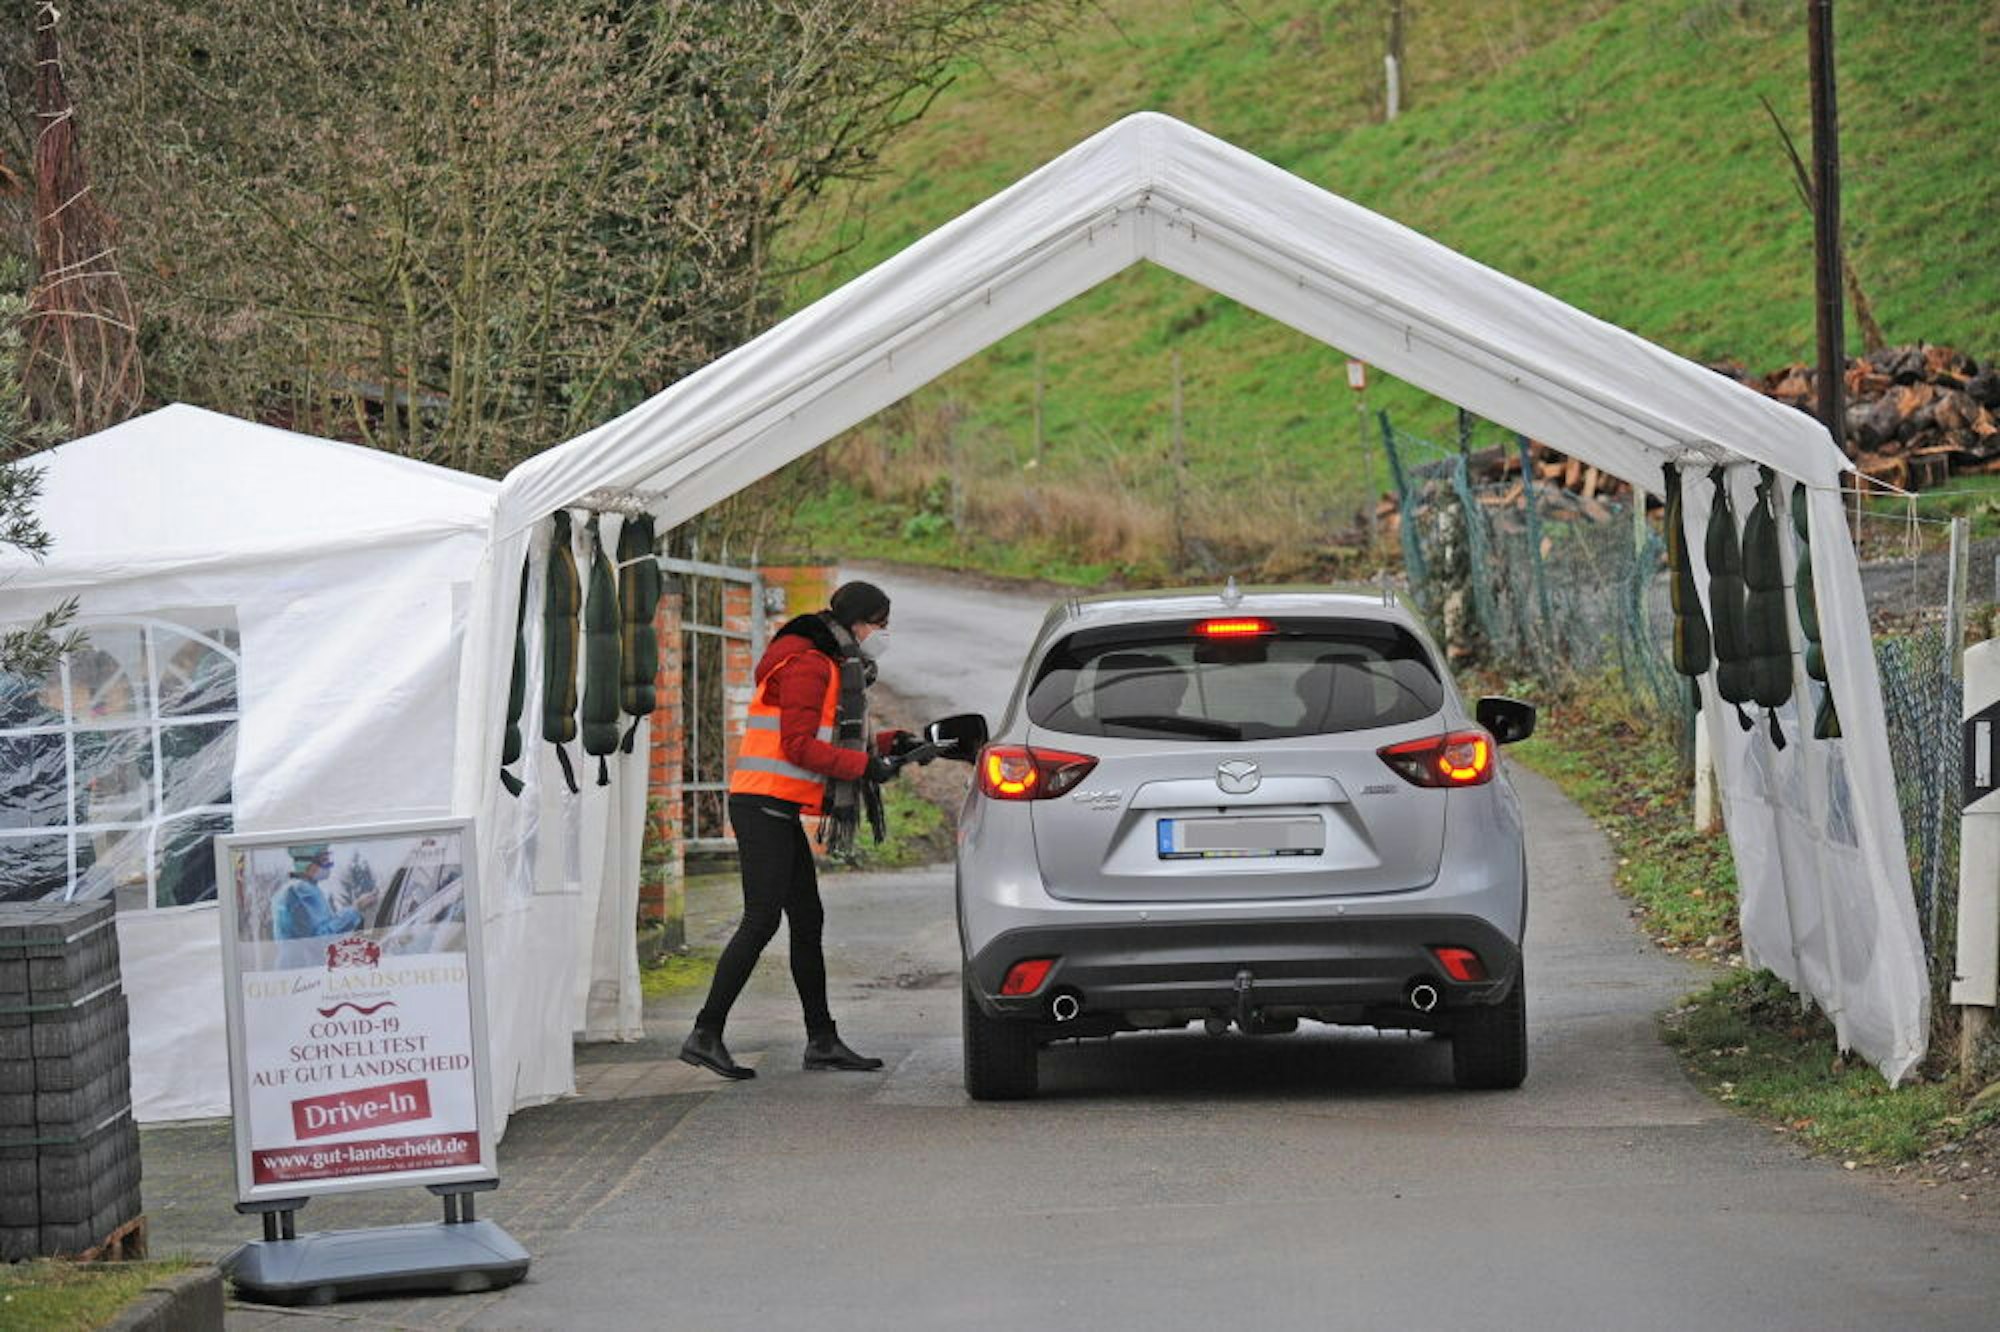 Bei hoher Nachfrage könnte am Burscheider Hotel-Restaurant auch wieder wie Ende 2020 eine Drive-in-Teststation eingerichtet werden.